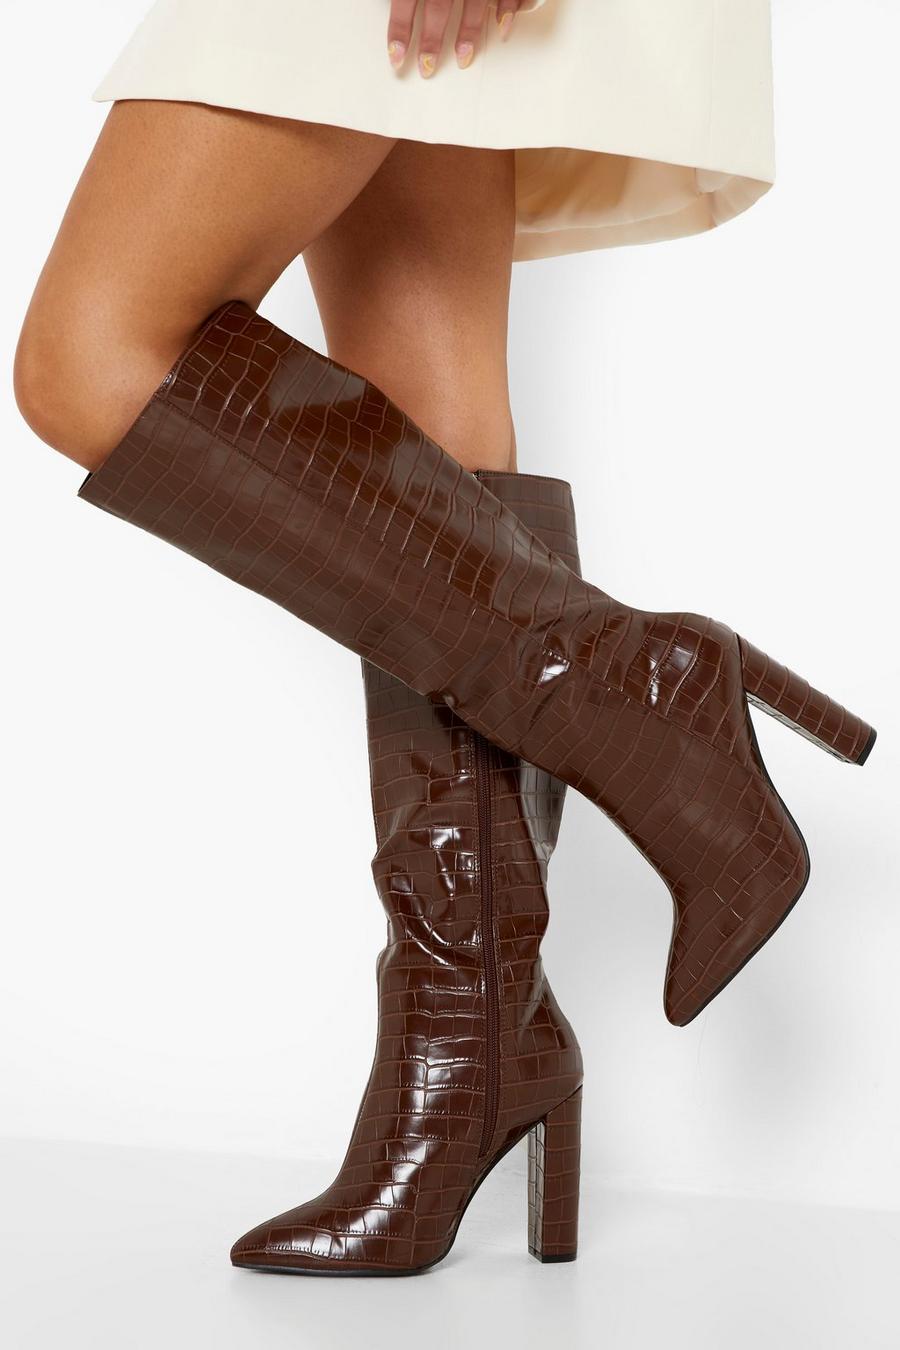 Stivali al ginocchio a calzata ampia a punta effetto coccodrillo, Chocolate marrón